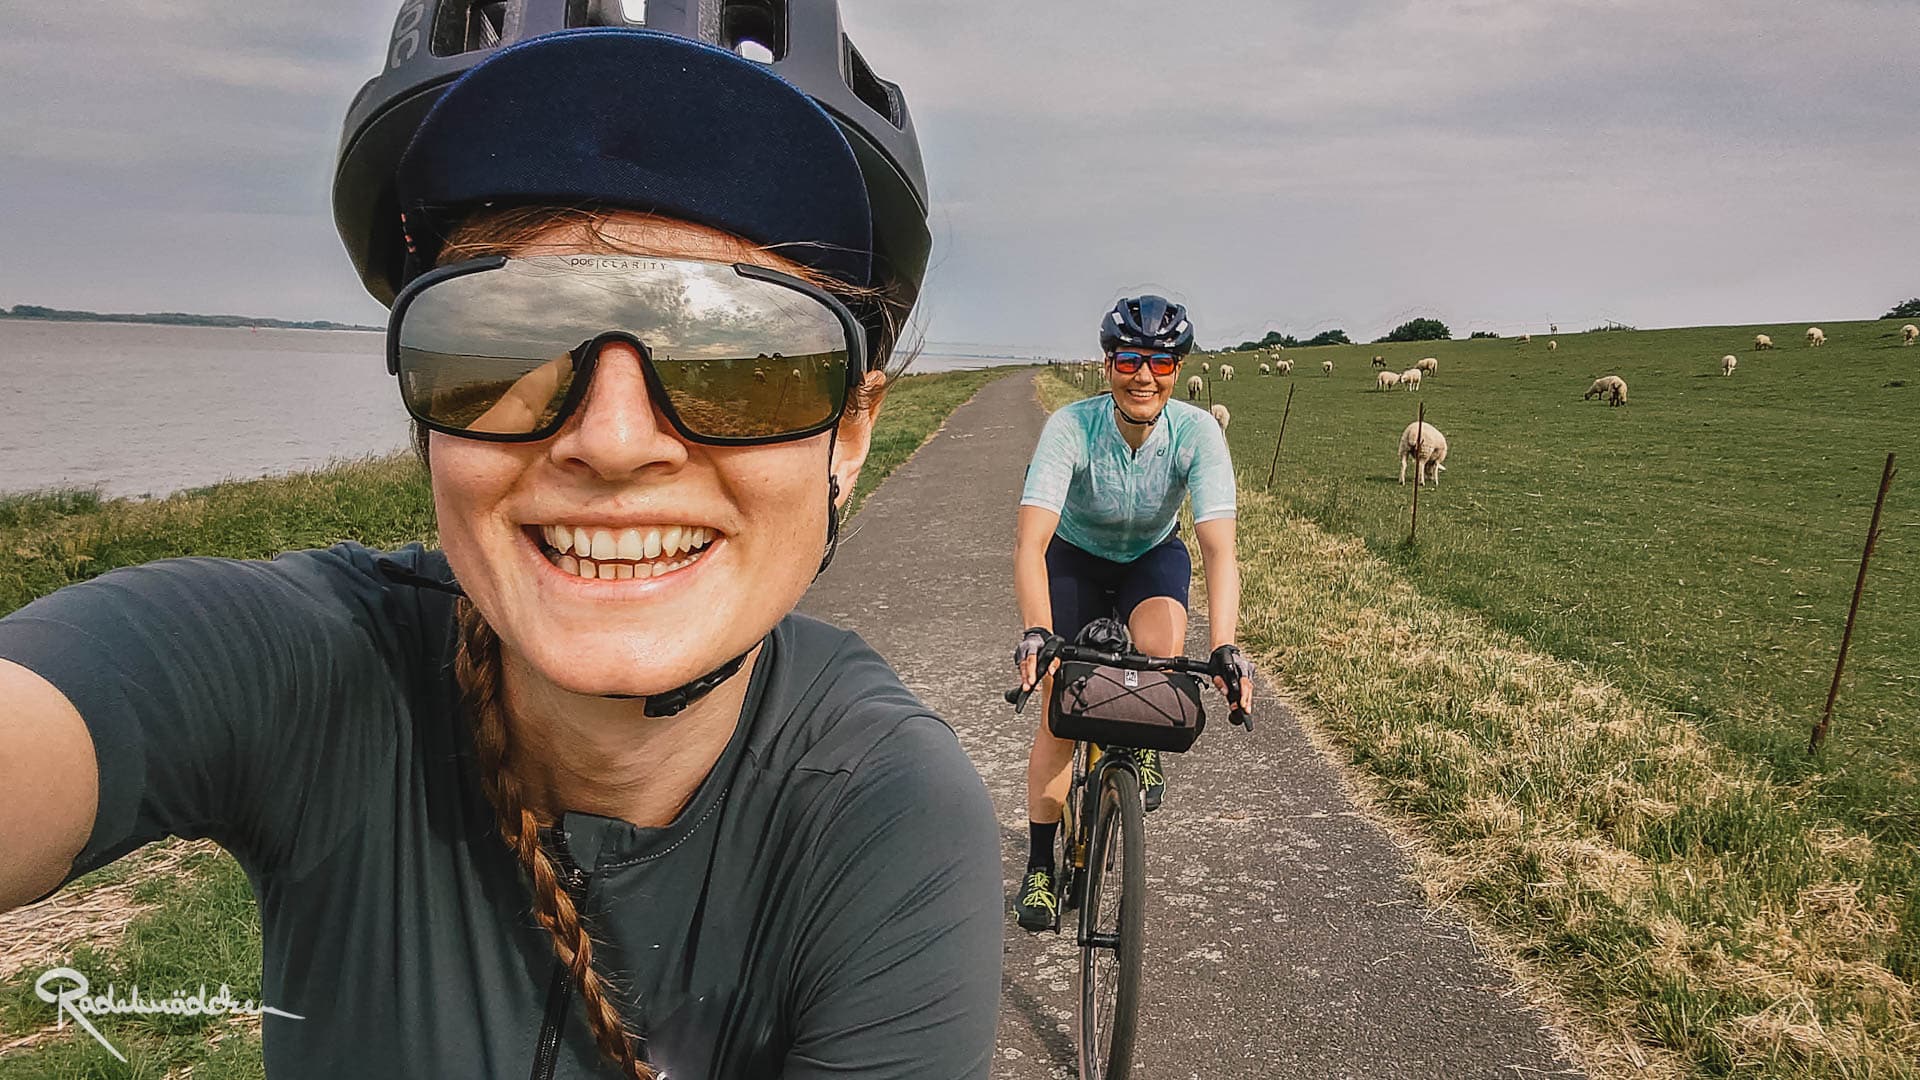 Frau lcht in die Kamera mit Helm und Fahrradbrille, eine weitere Frau fährt auf dem Fahrrad hinter ihr